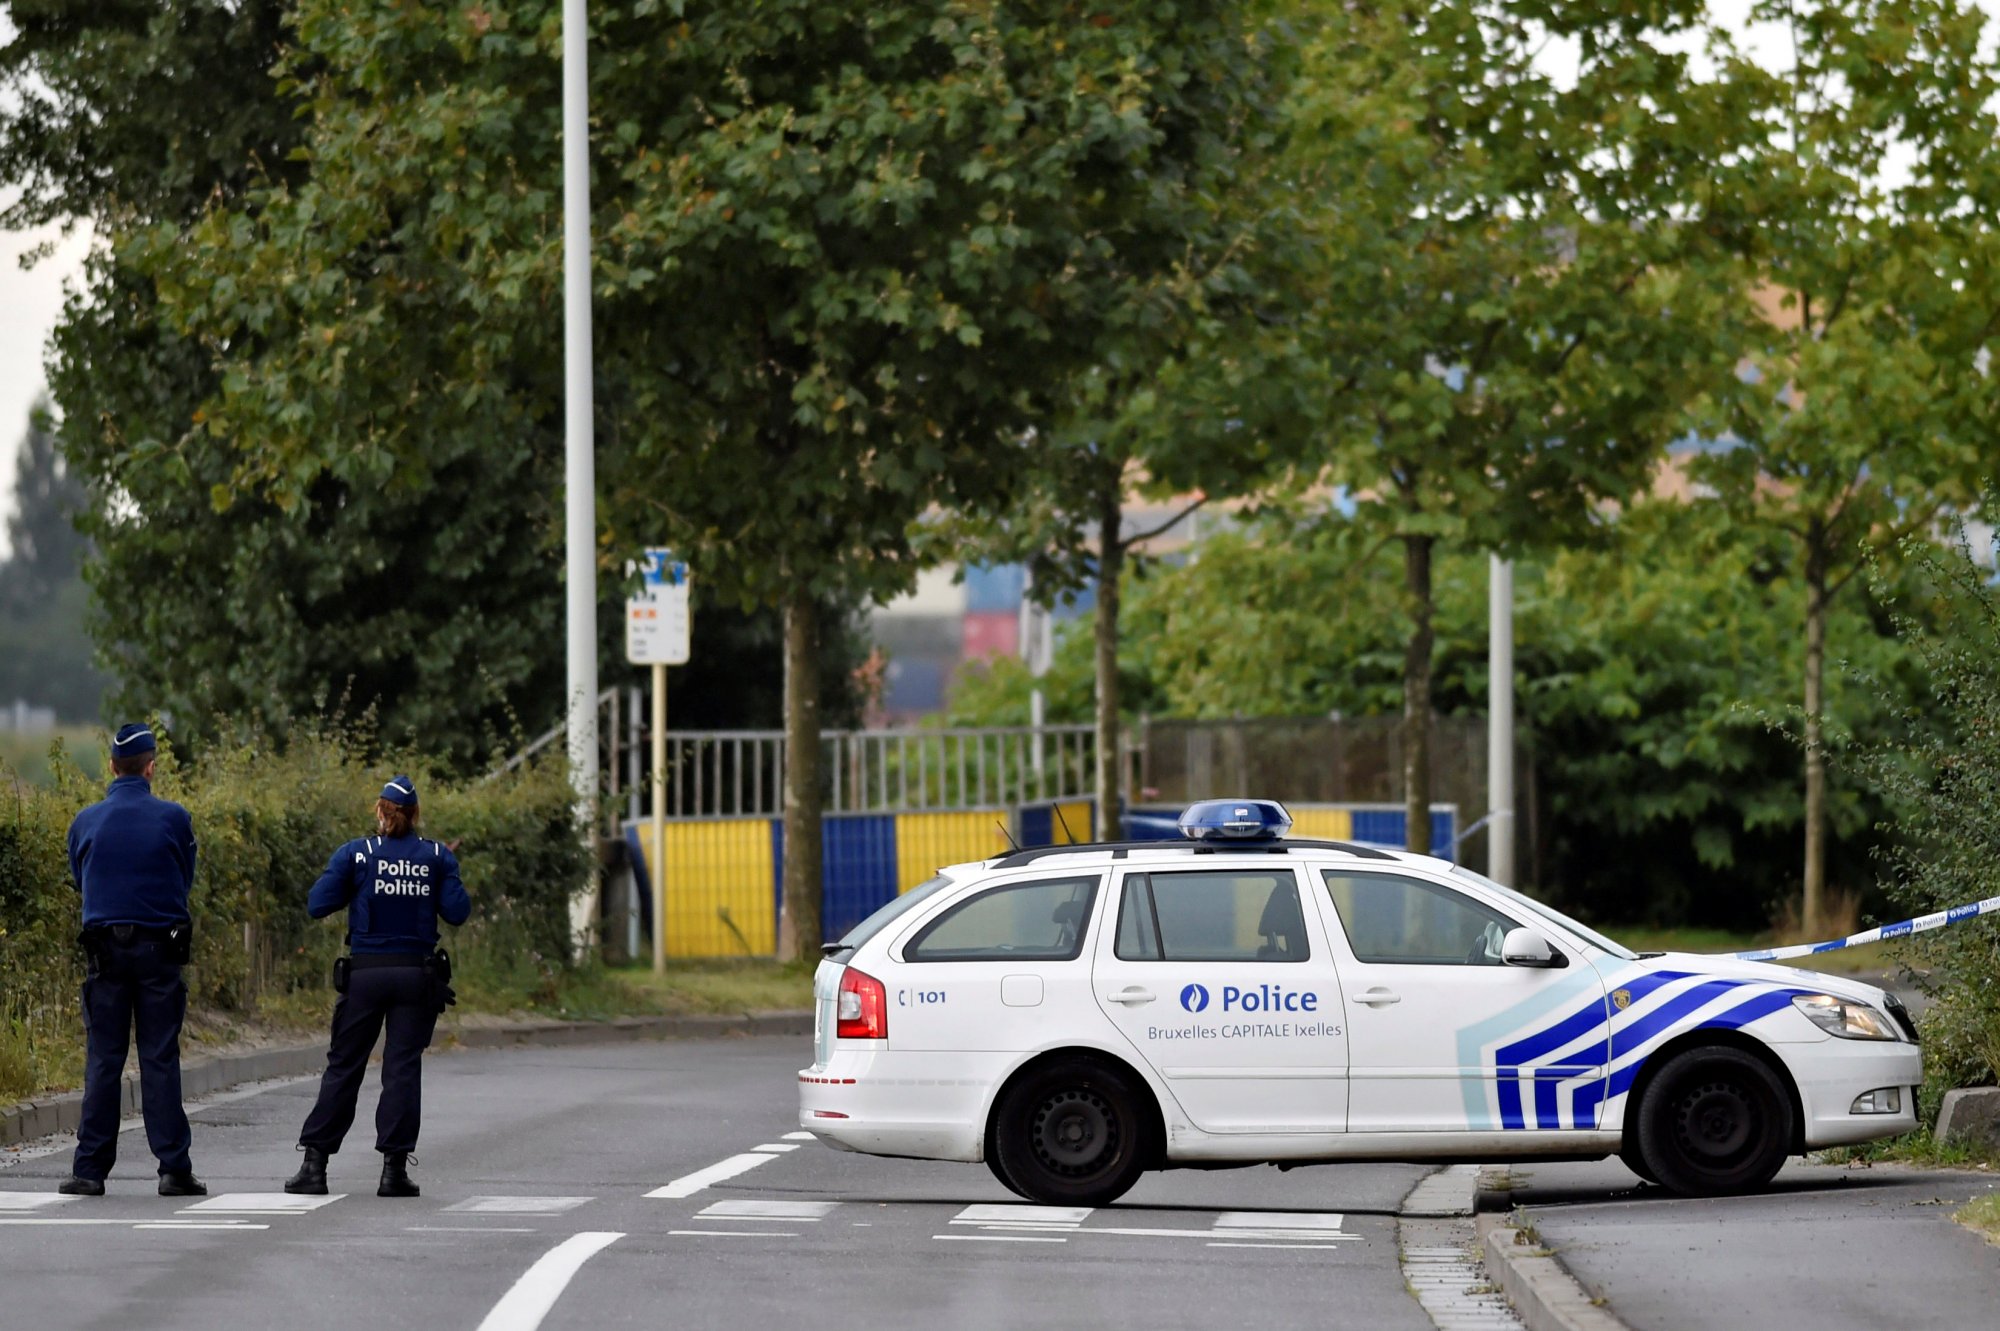 Βέλγιο: Τουριστικό λεωφορείο έπεσε σε δέντρο - 22 τραυματίες, οι τρεις σοβαρά